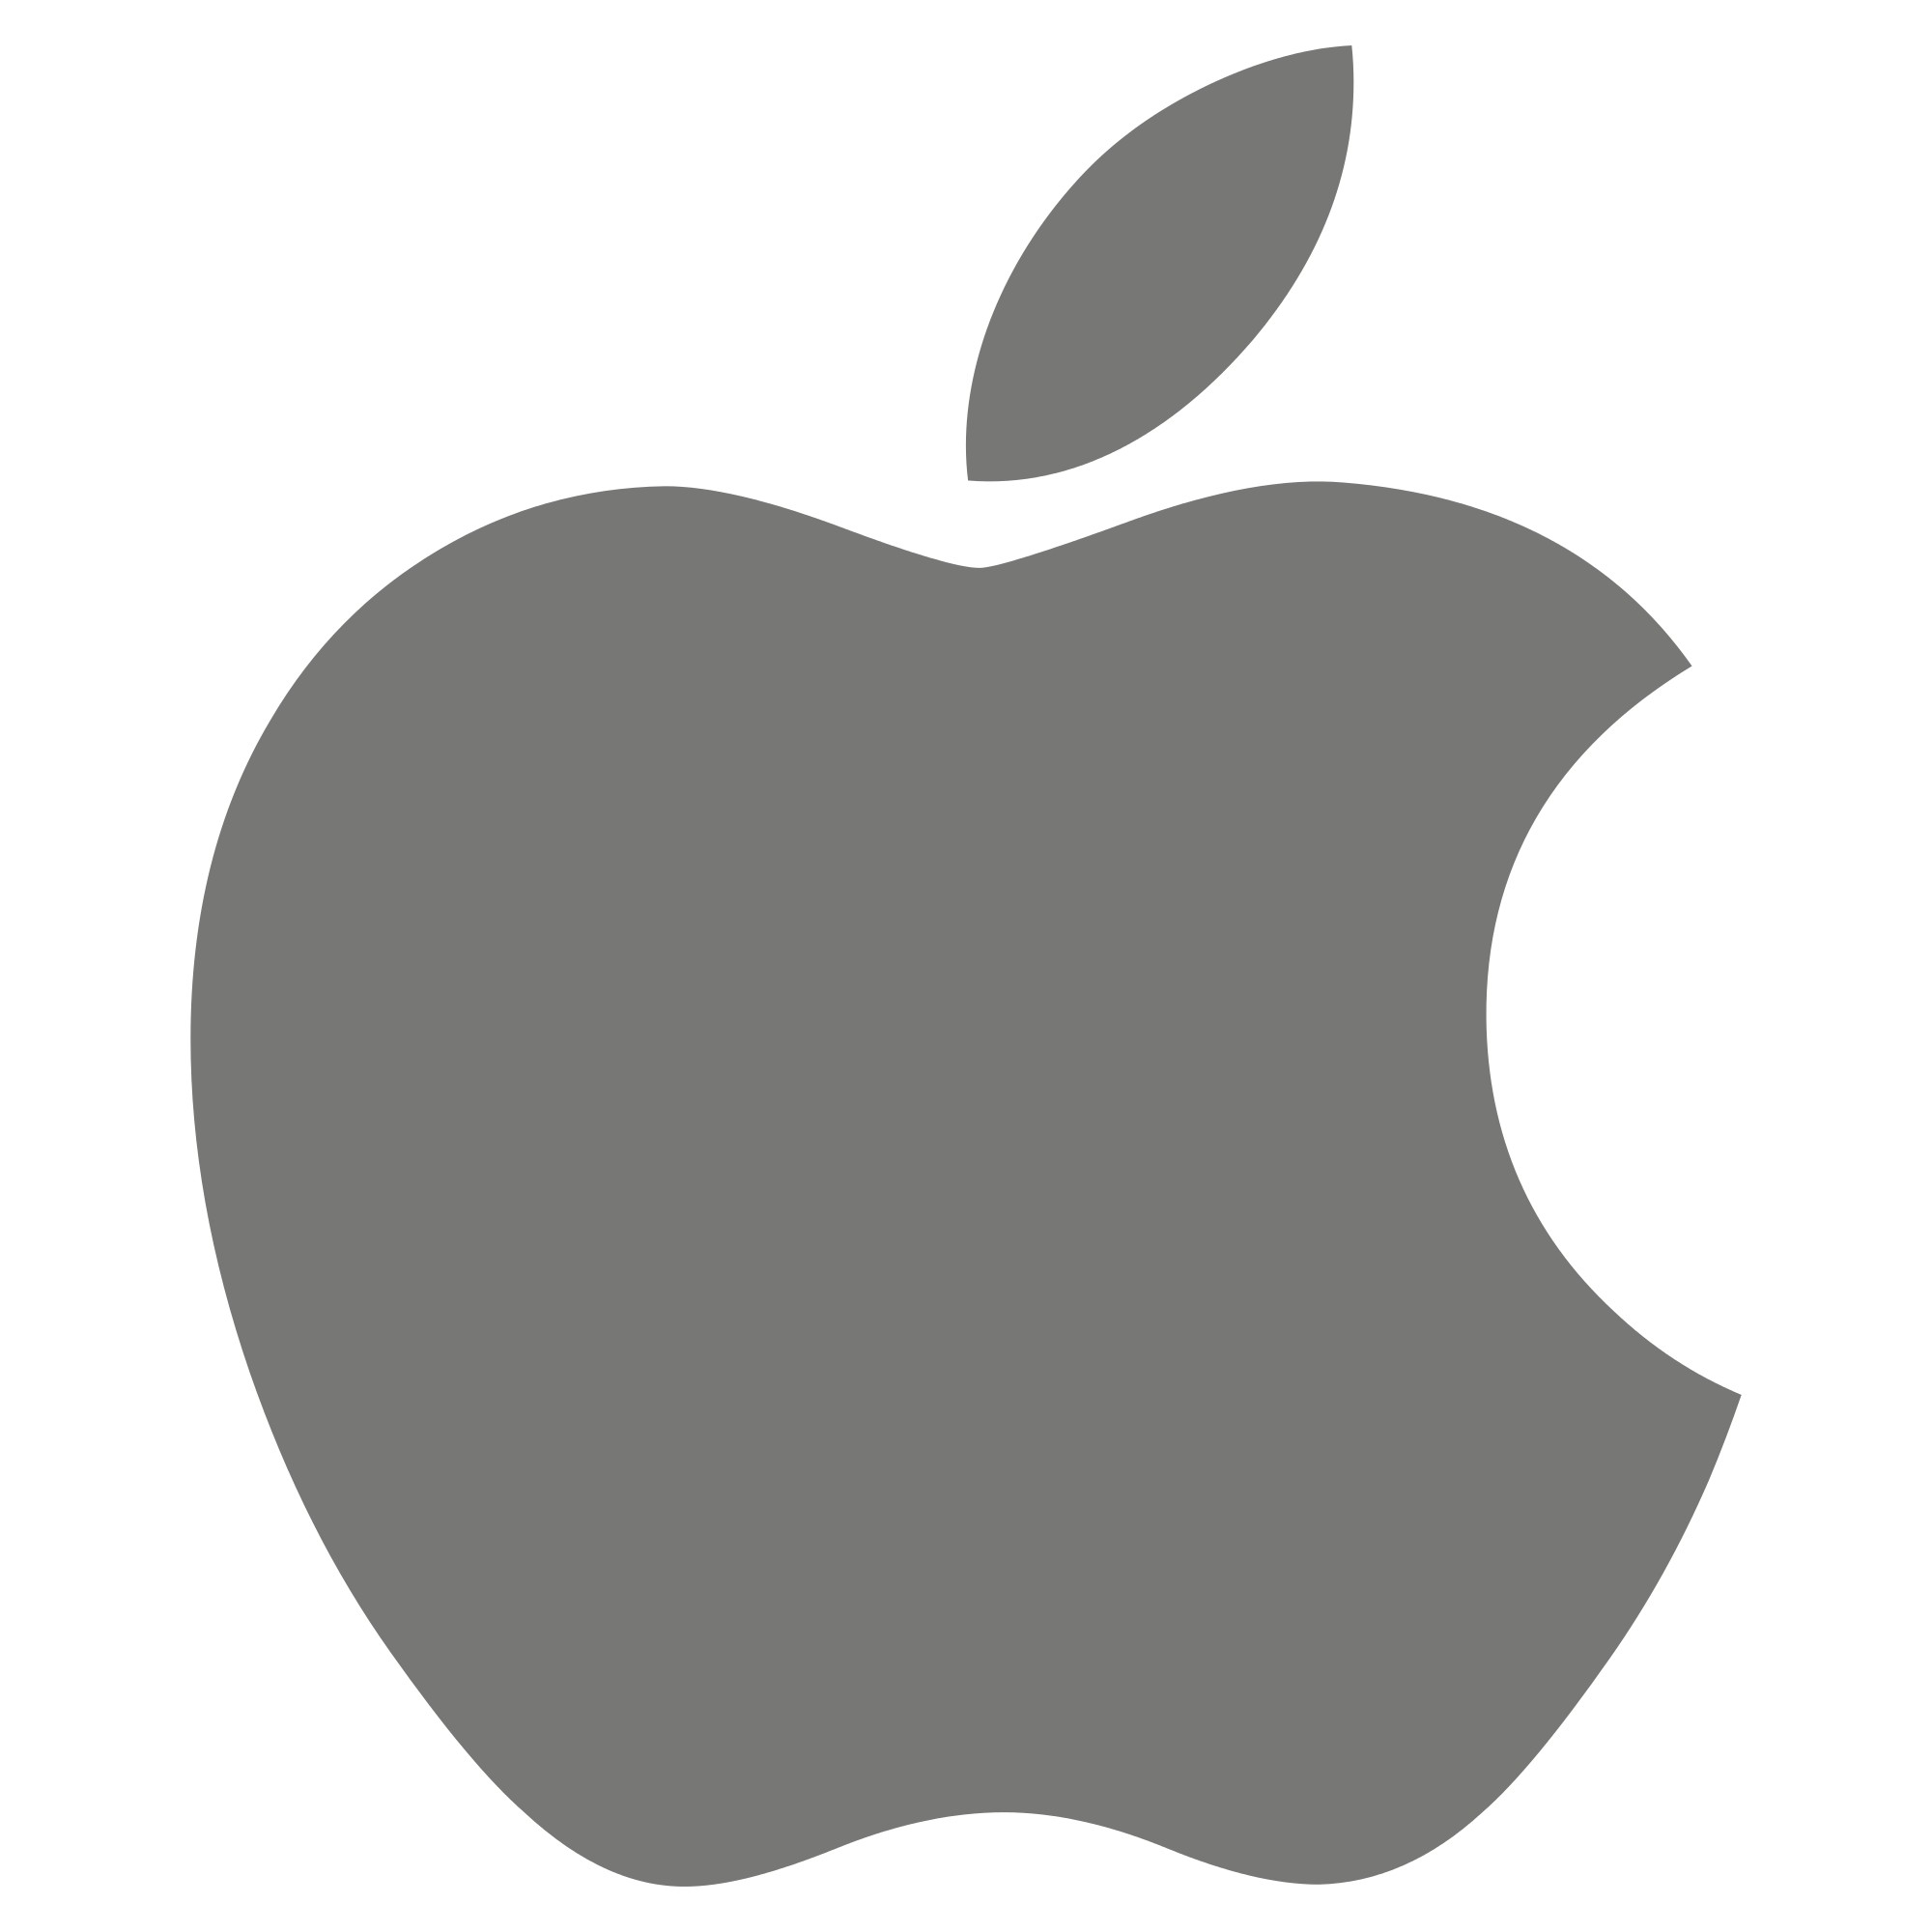 Apple_logo_black.svg.png